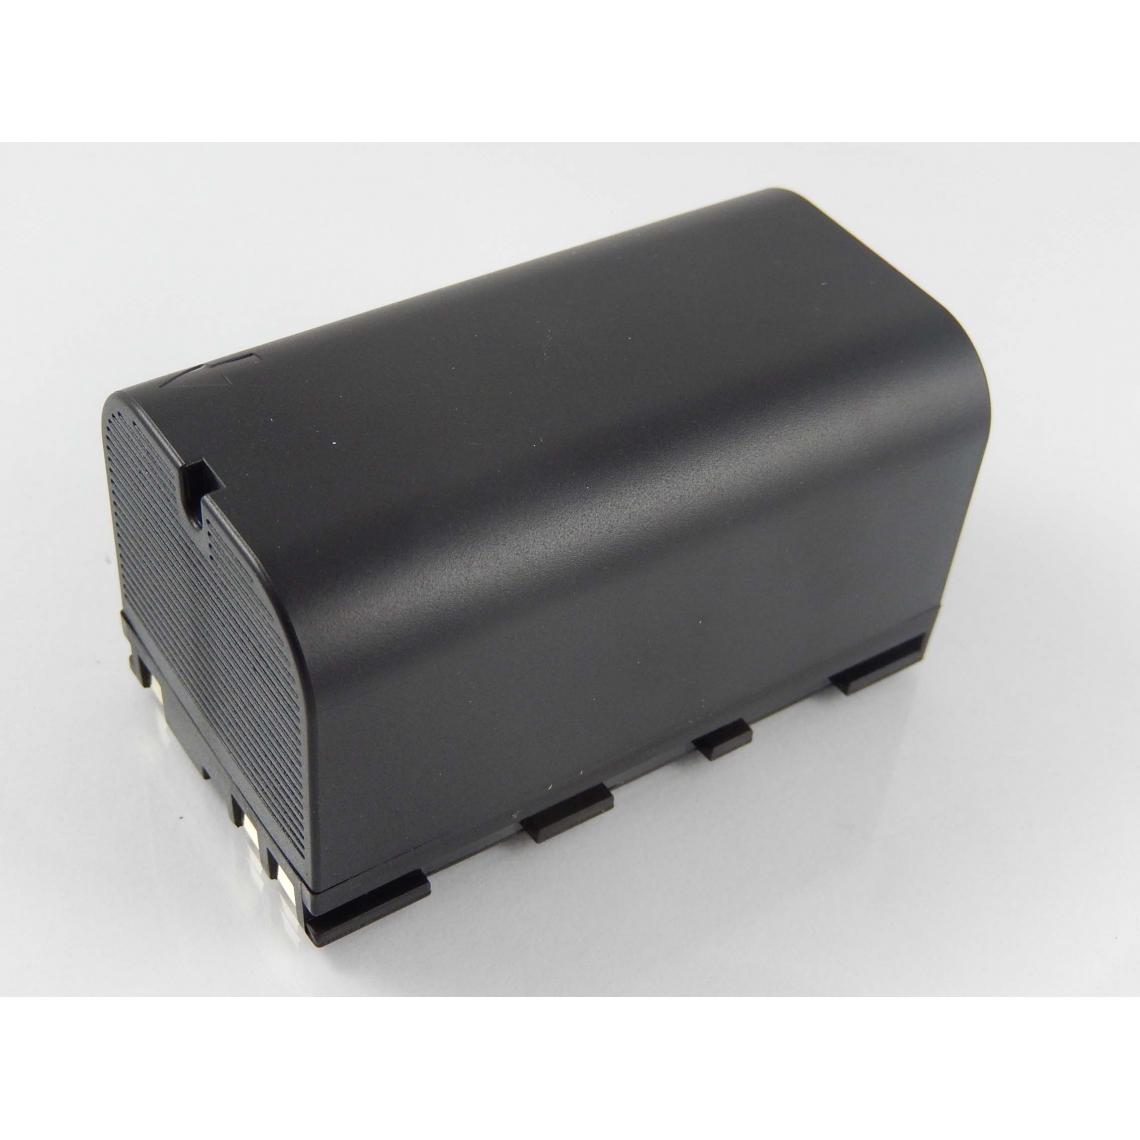 Vhbw - vhbw Batterie compatible avec Leica TS06, TS09, TS11, TS12, TS15 dispositif de mesure laser, outil de mesure (5600mAh, 7,4V, Li-ion) - Piles rechargeables